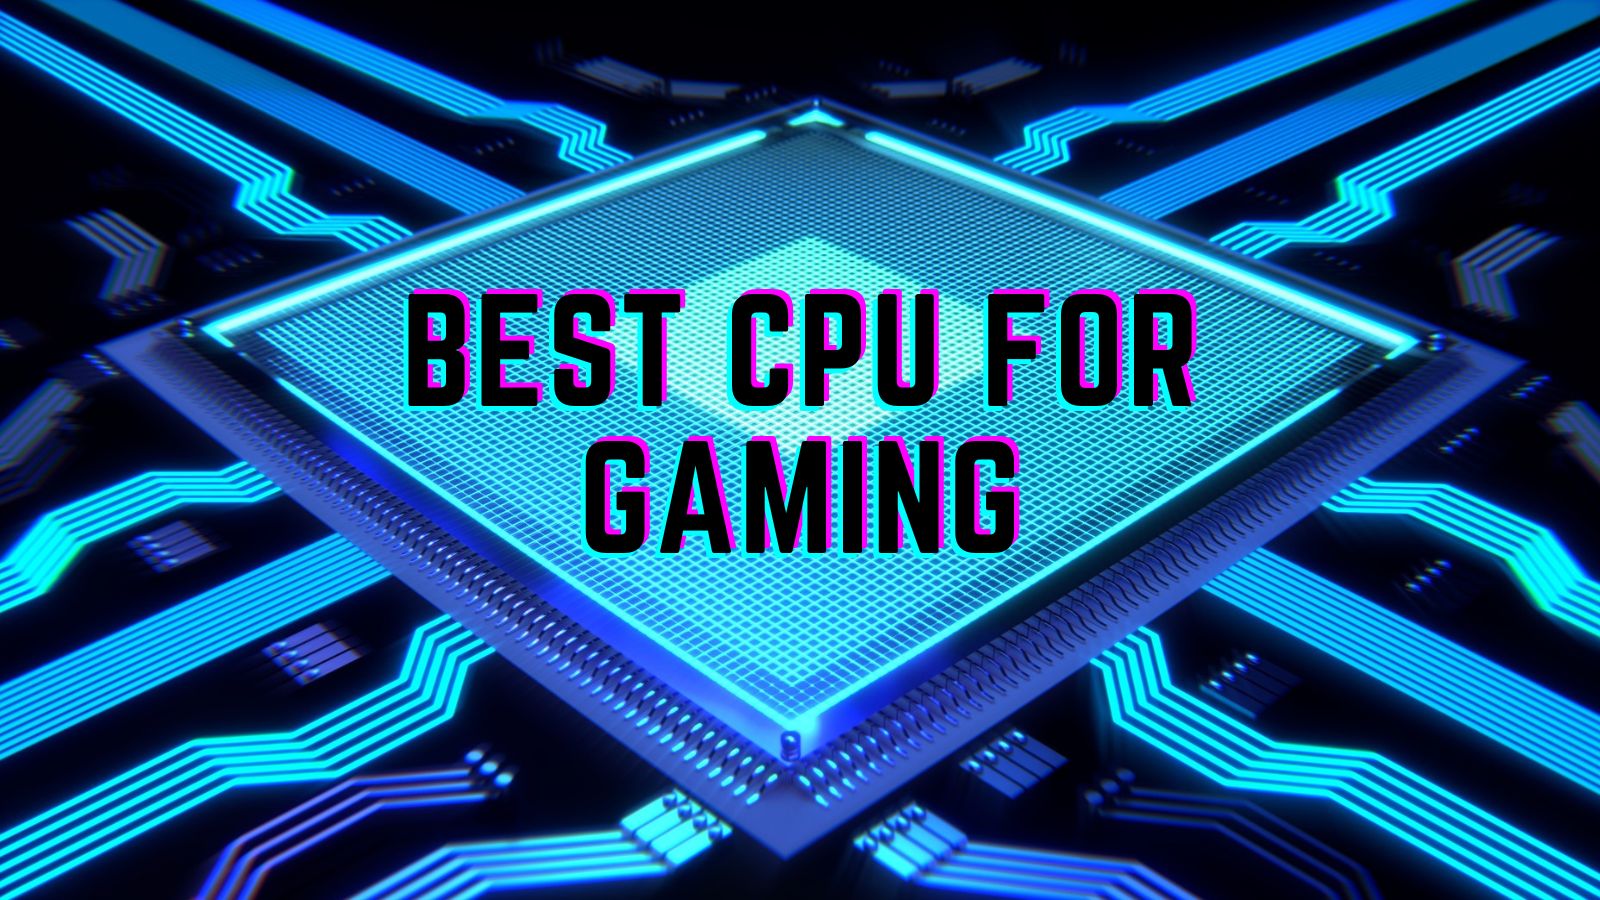 Best CPUs for Gaming: Q3 2018